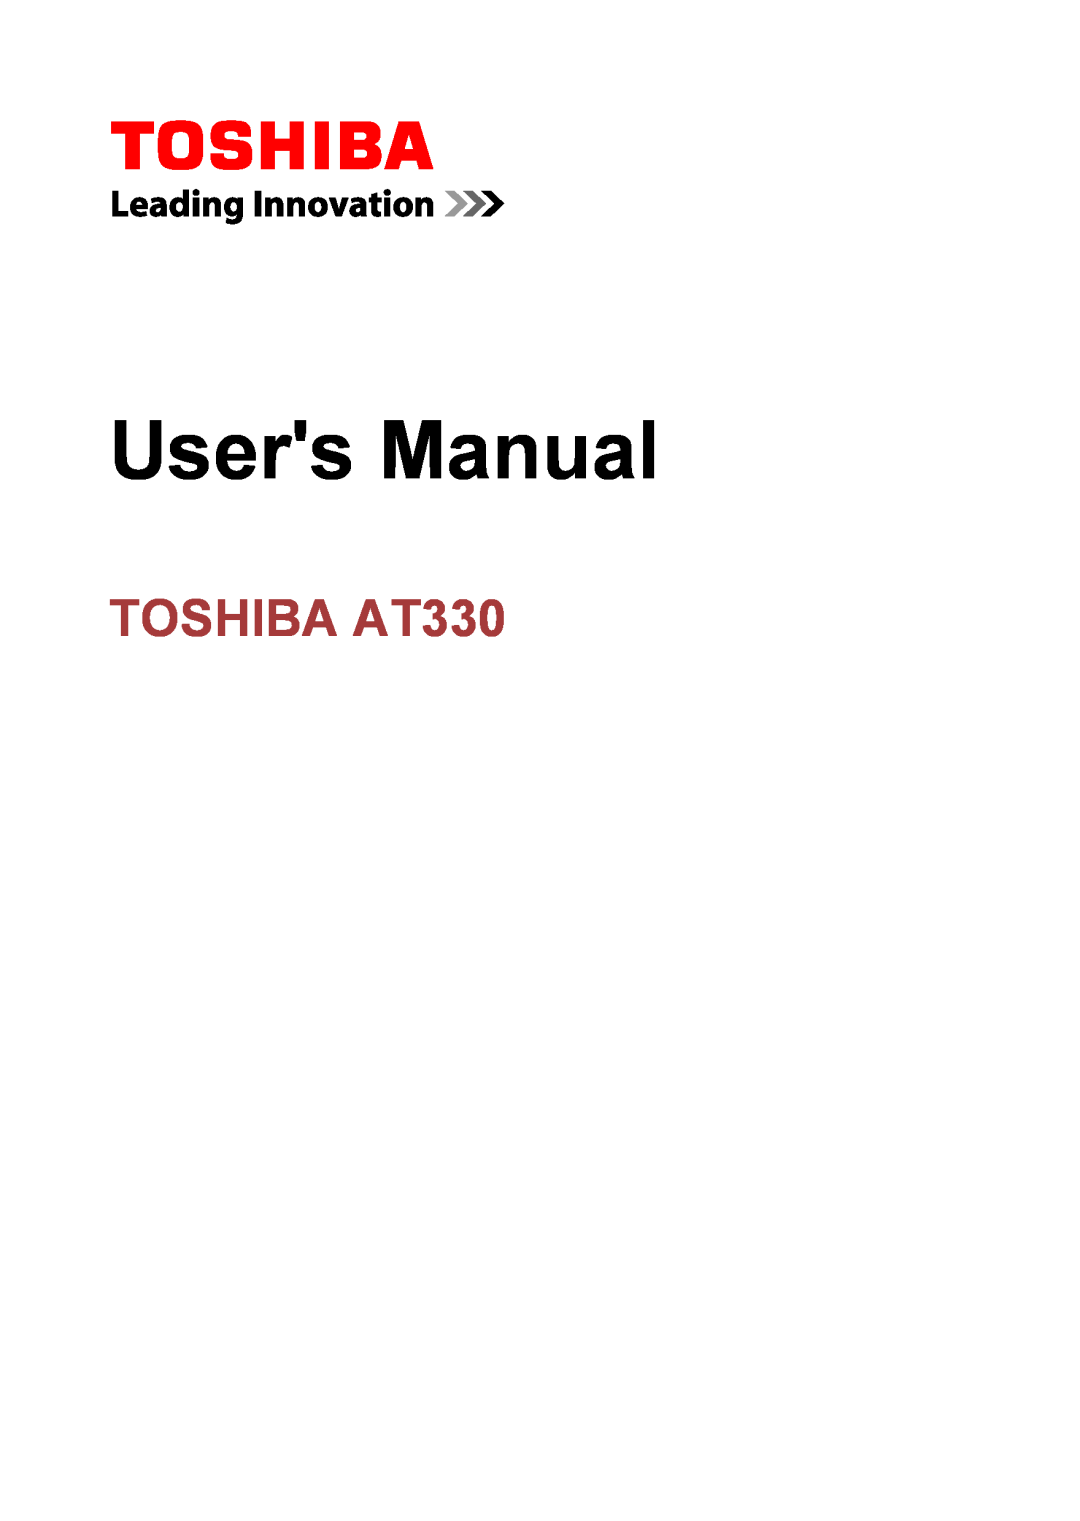 Toshiba at330 user manual TOSHIBA AT330, Users Manual 